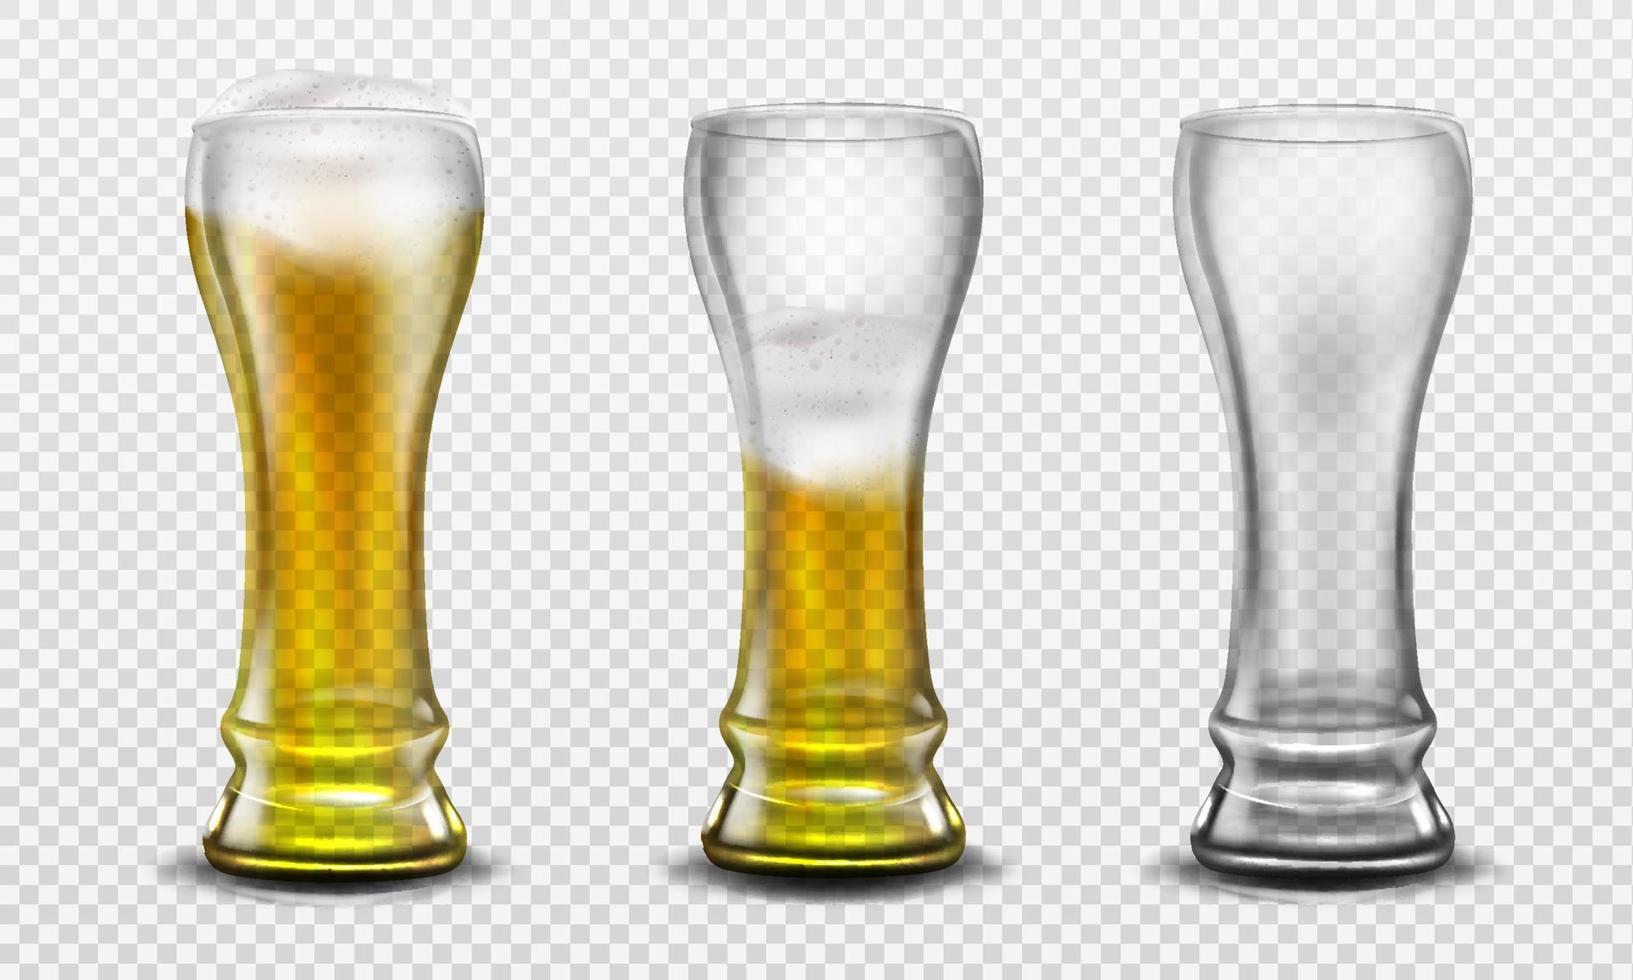 großes Glas voll Bier, halb voll und leer vektor